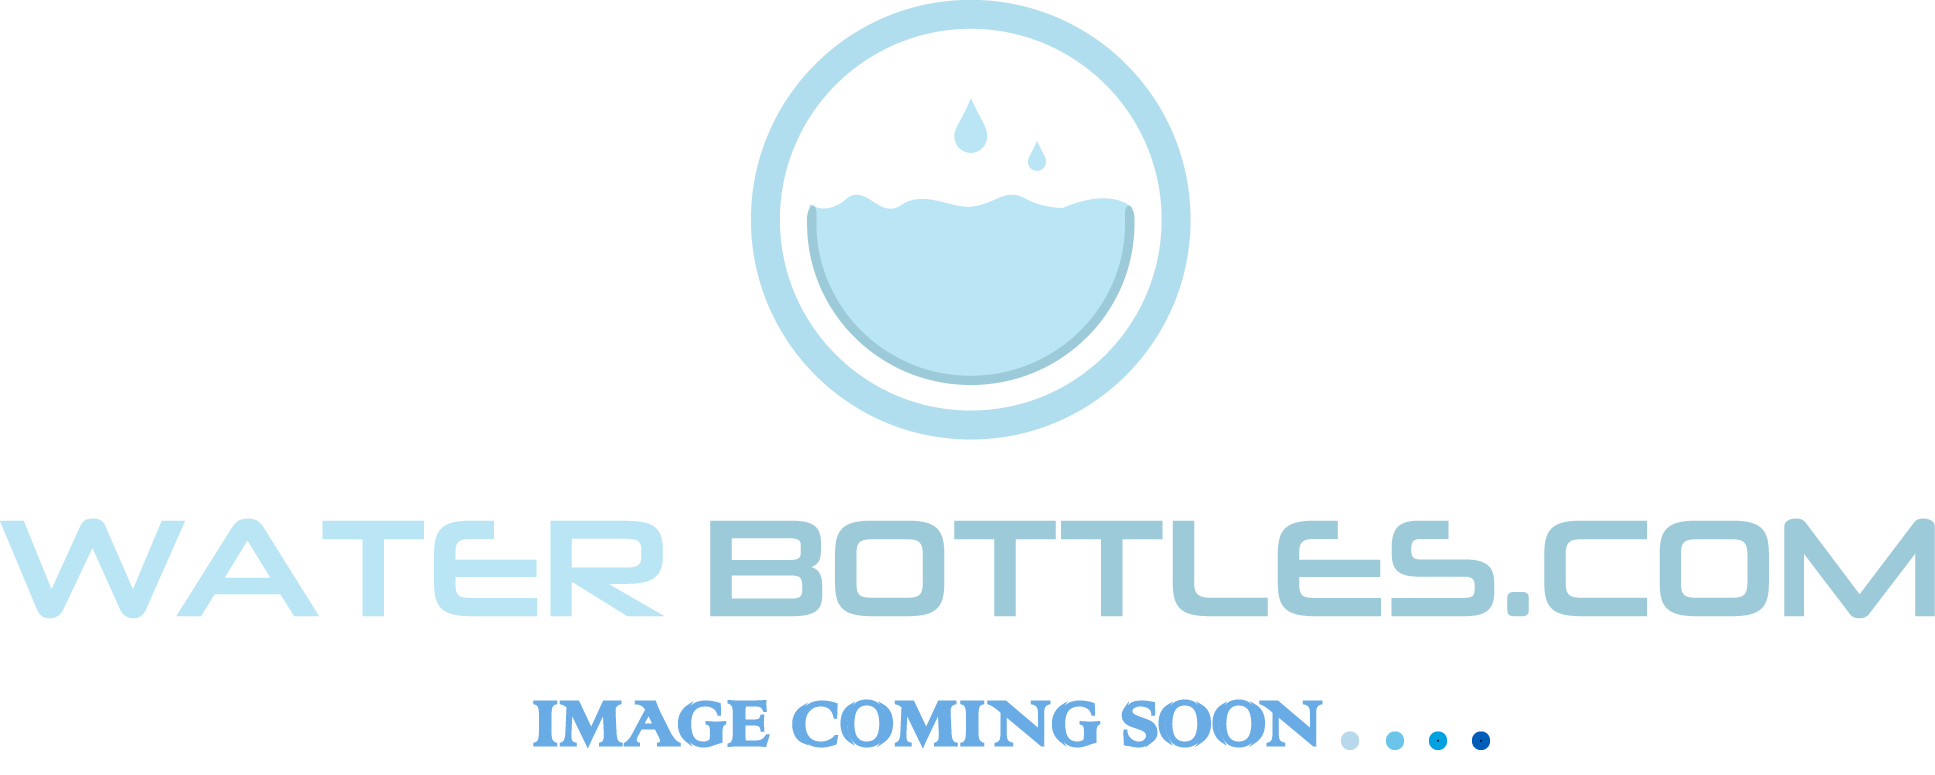 Custom water bottles & tumblers!